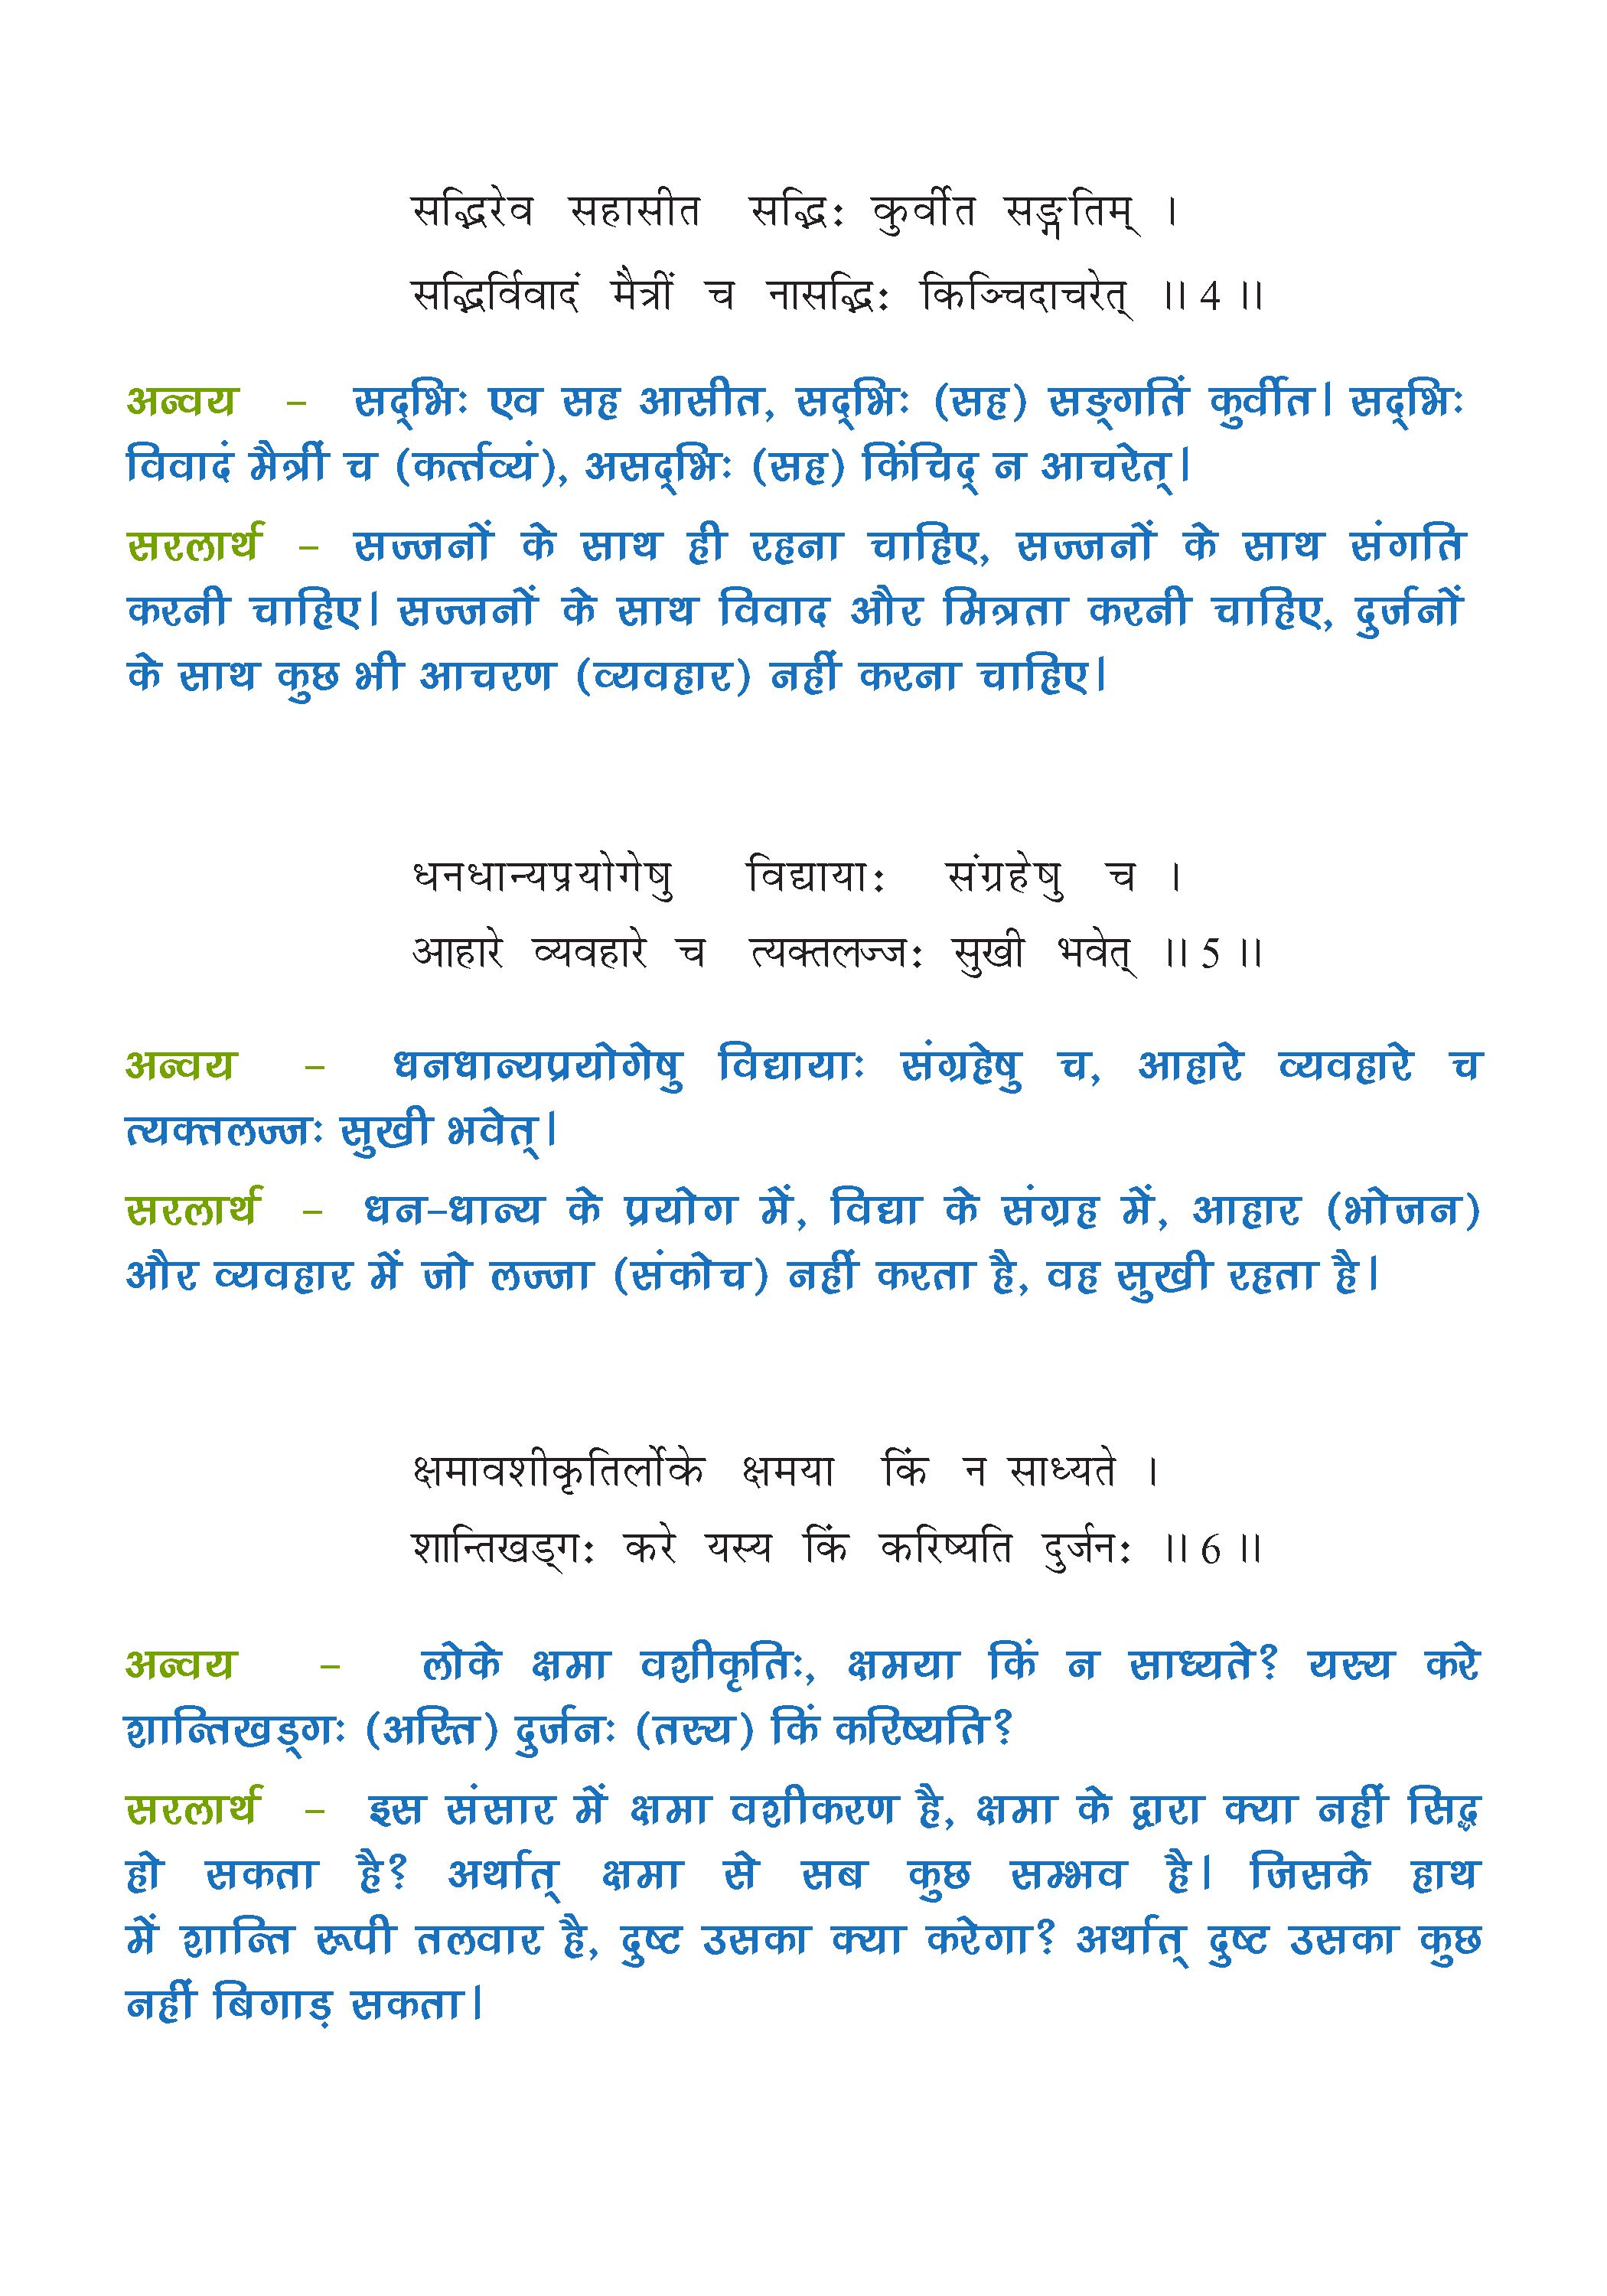 NCERT Solution For Class 7 Sanskrit Chapter 1 part 2